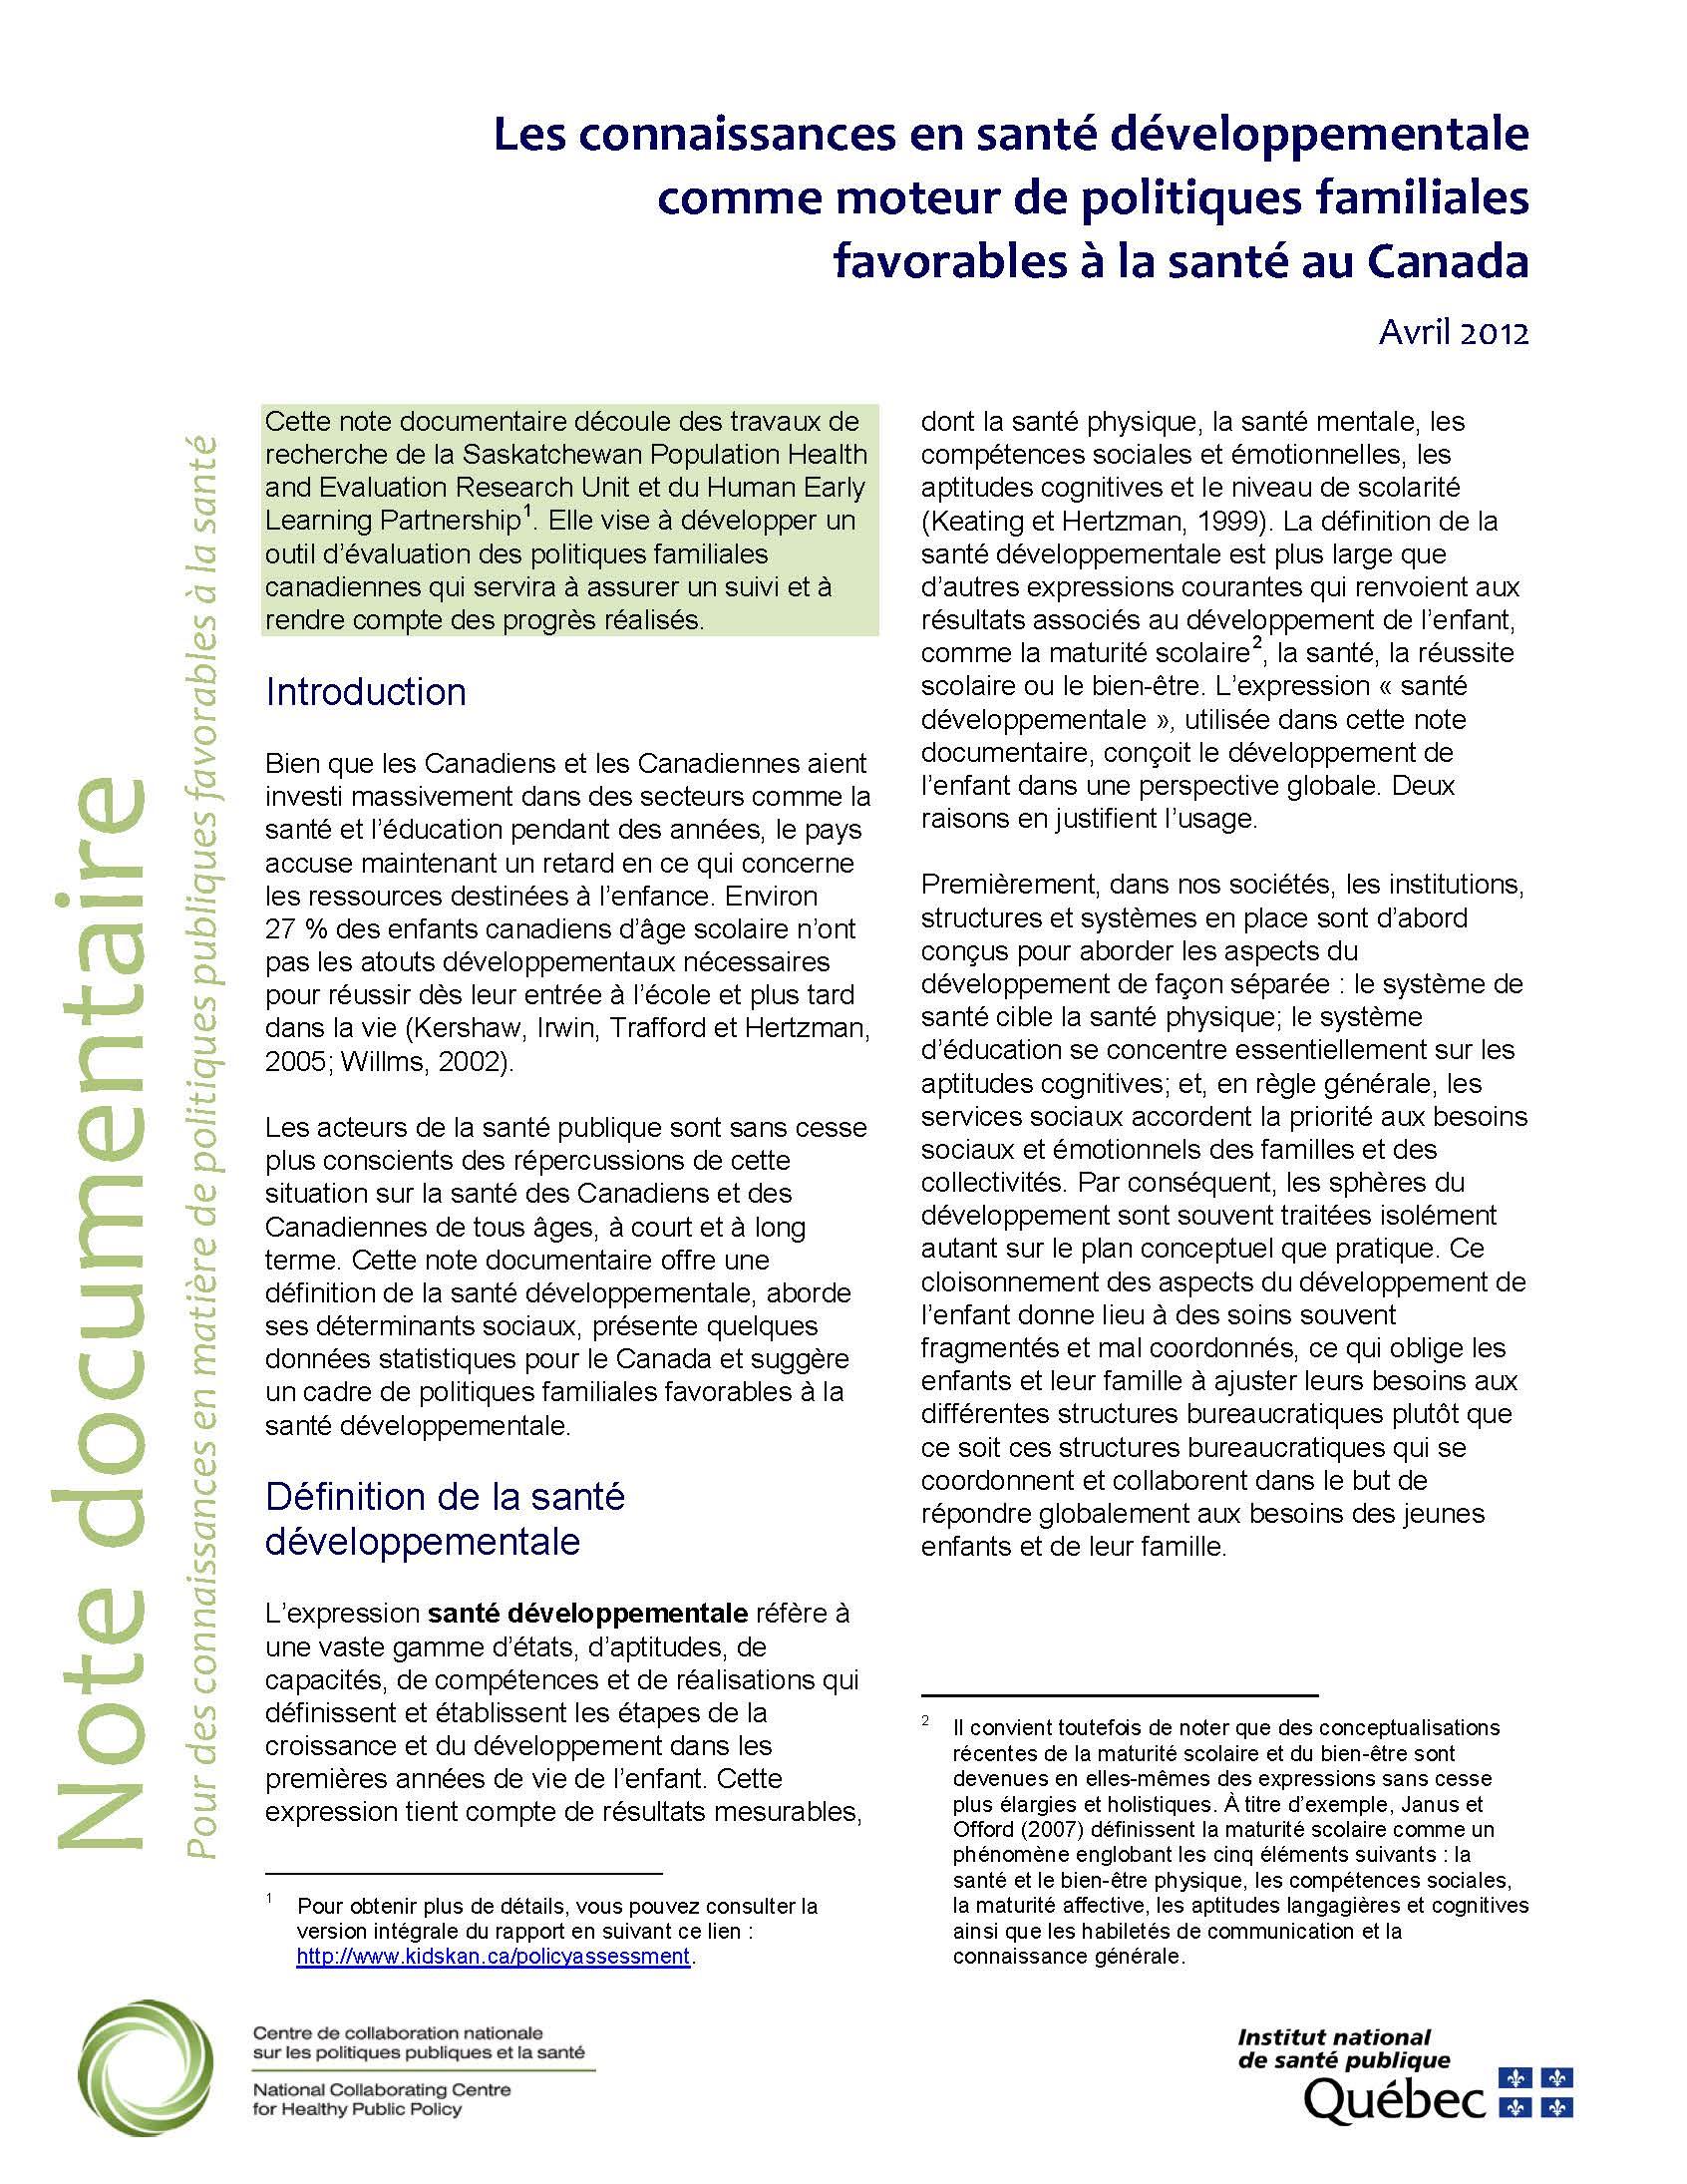 Les connaissances en santé développementale comme moteur de politiques familiales favorables à la santé au Canada